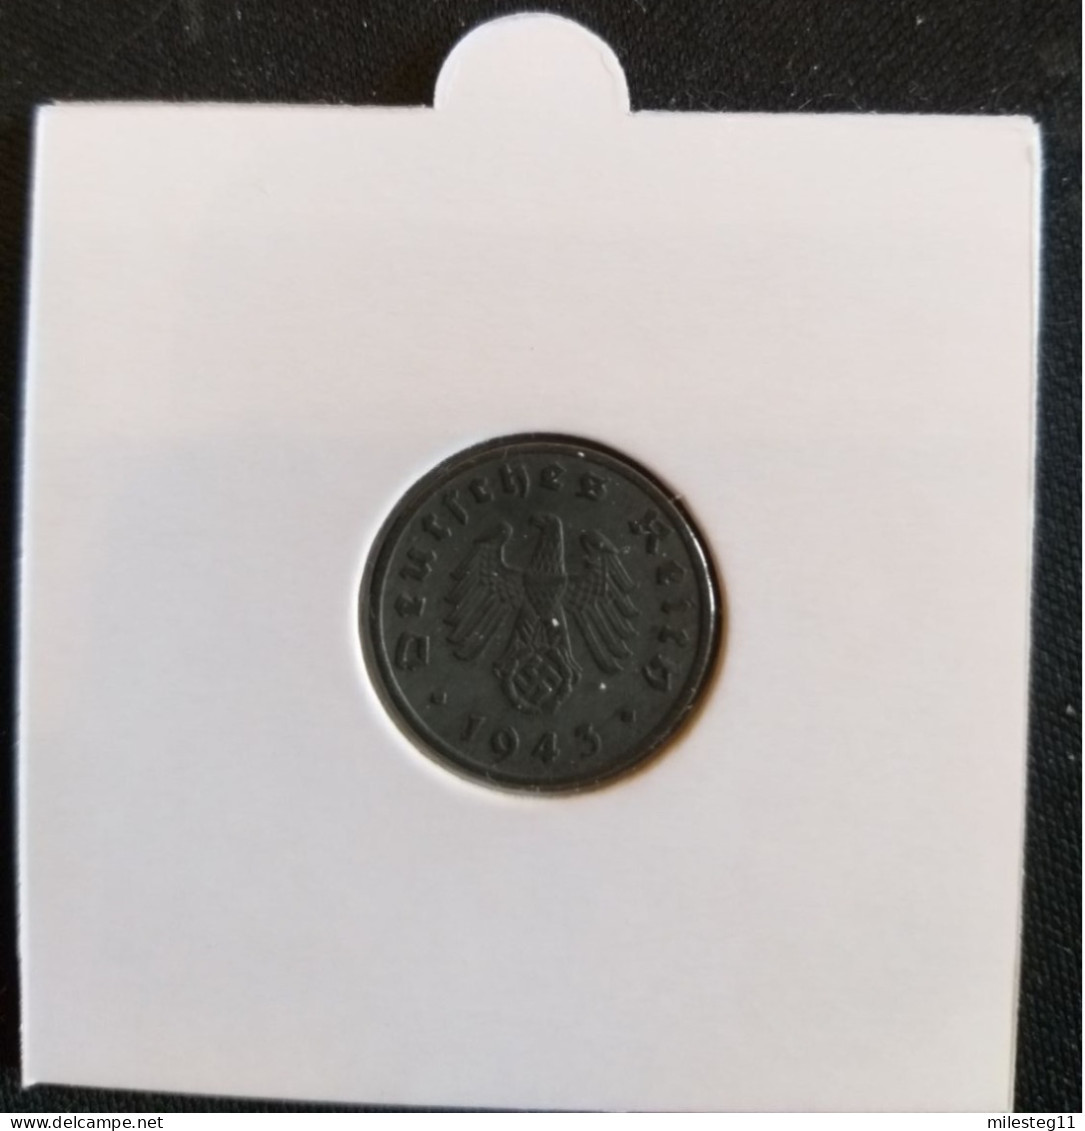 Pièce De 1 Reichspfennig De 1943F (Stuttgard) - 1 Reichspfennig